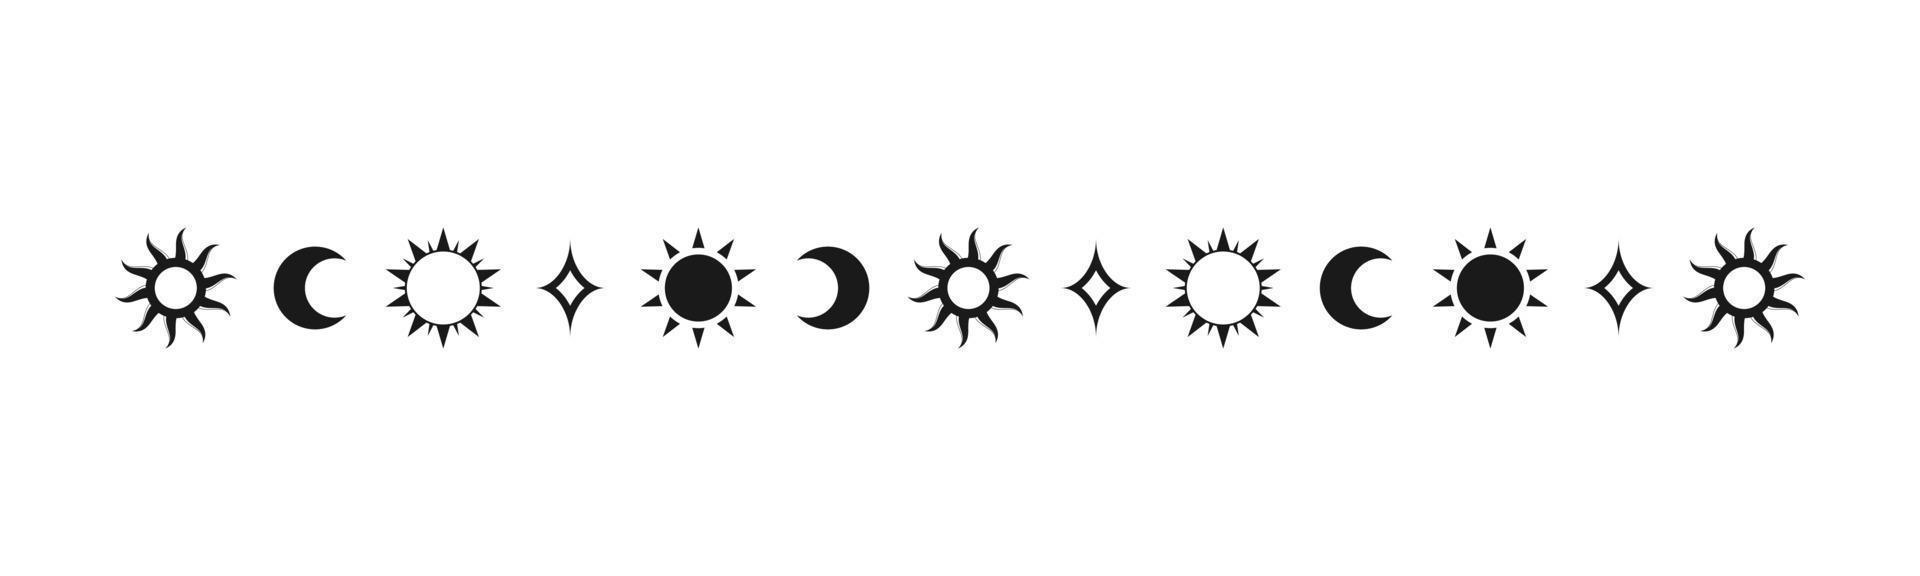 himmelsk mystiker separator med Sol, stjärnor, måne faser, halvmånar. utsmyckad boho magisk delare dekorativ element vektor